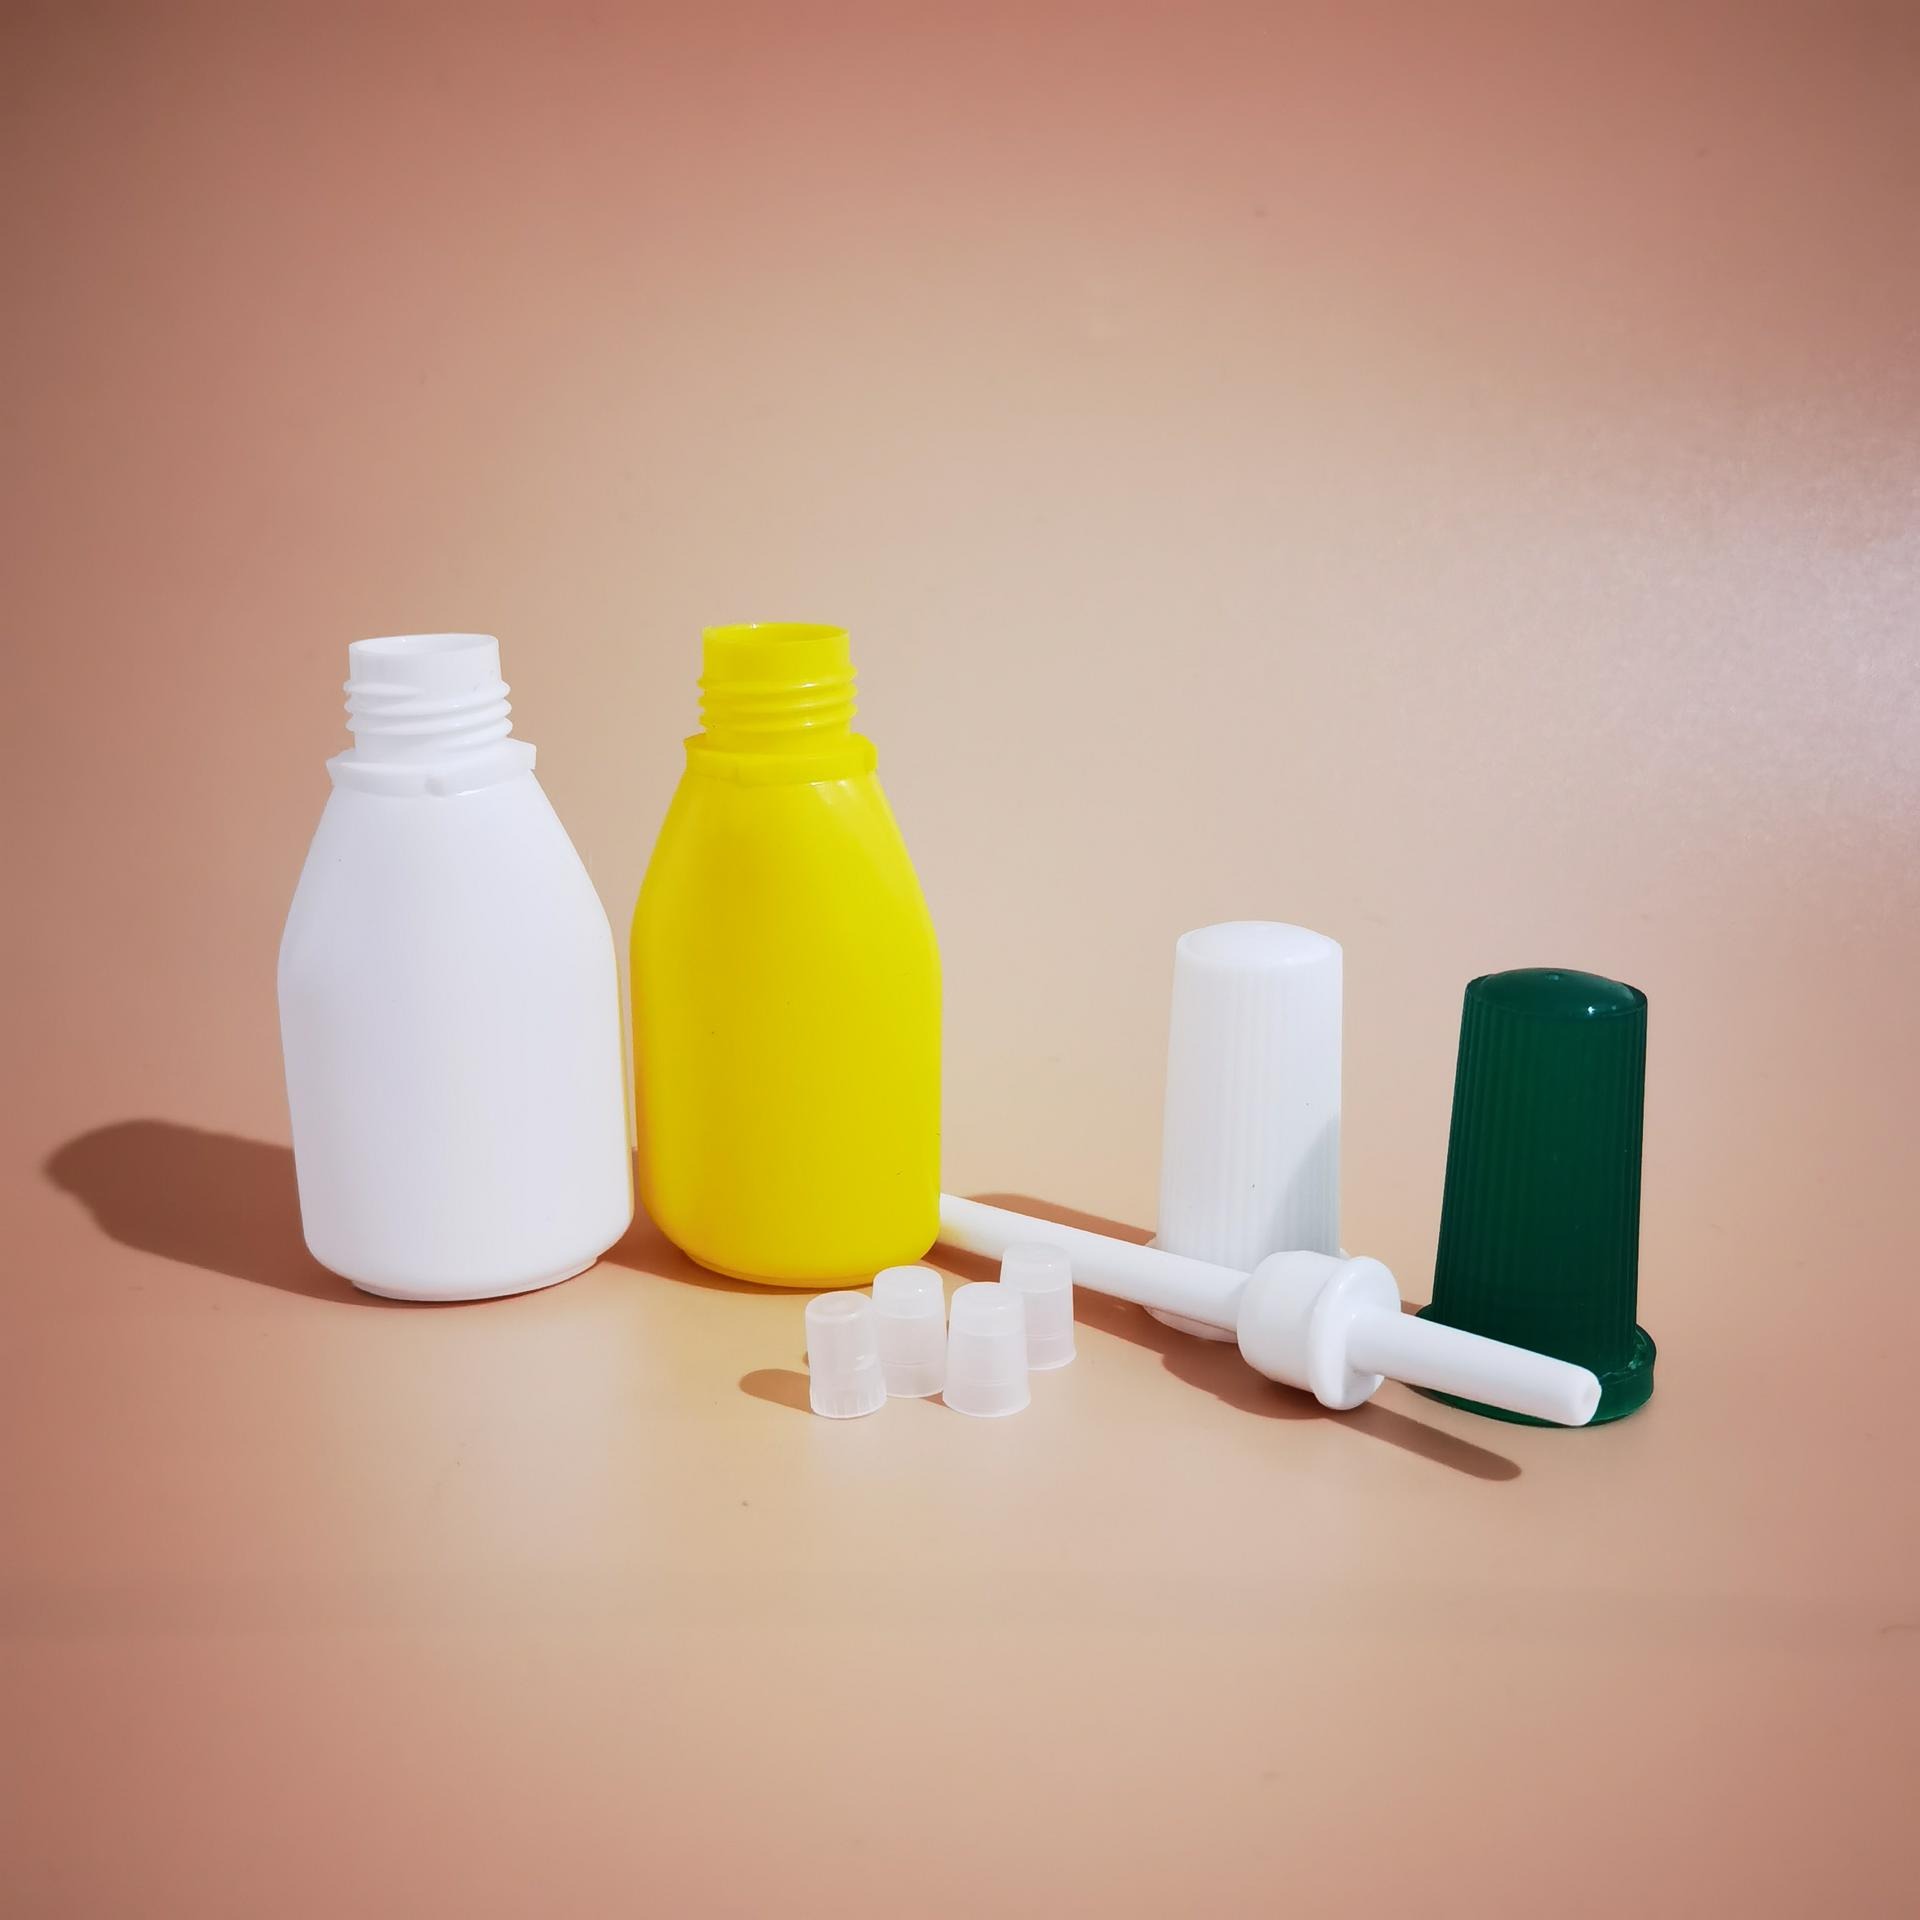 西瓜霜喷粉瓶 10g 20g喷粉瓶 西瓜霜瓶 粉末分装瓶 塑料牙粉瓶图片